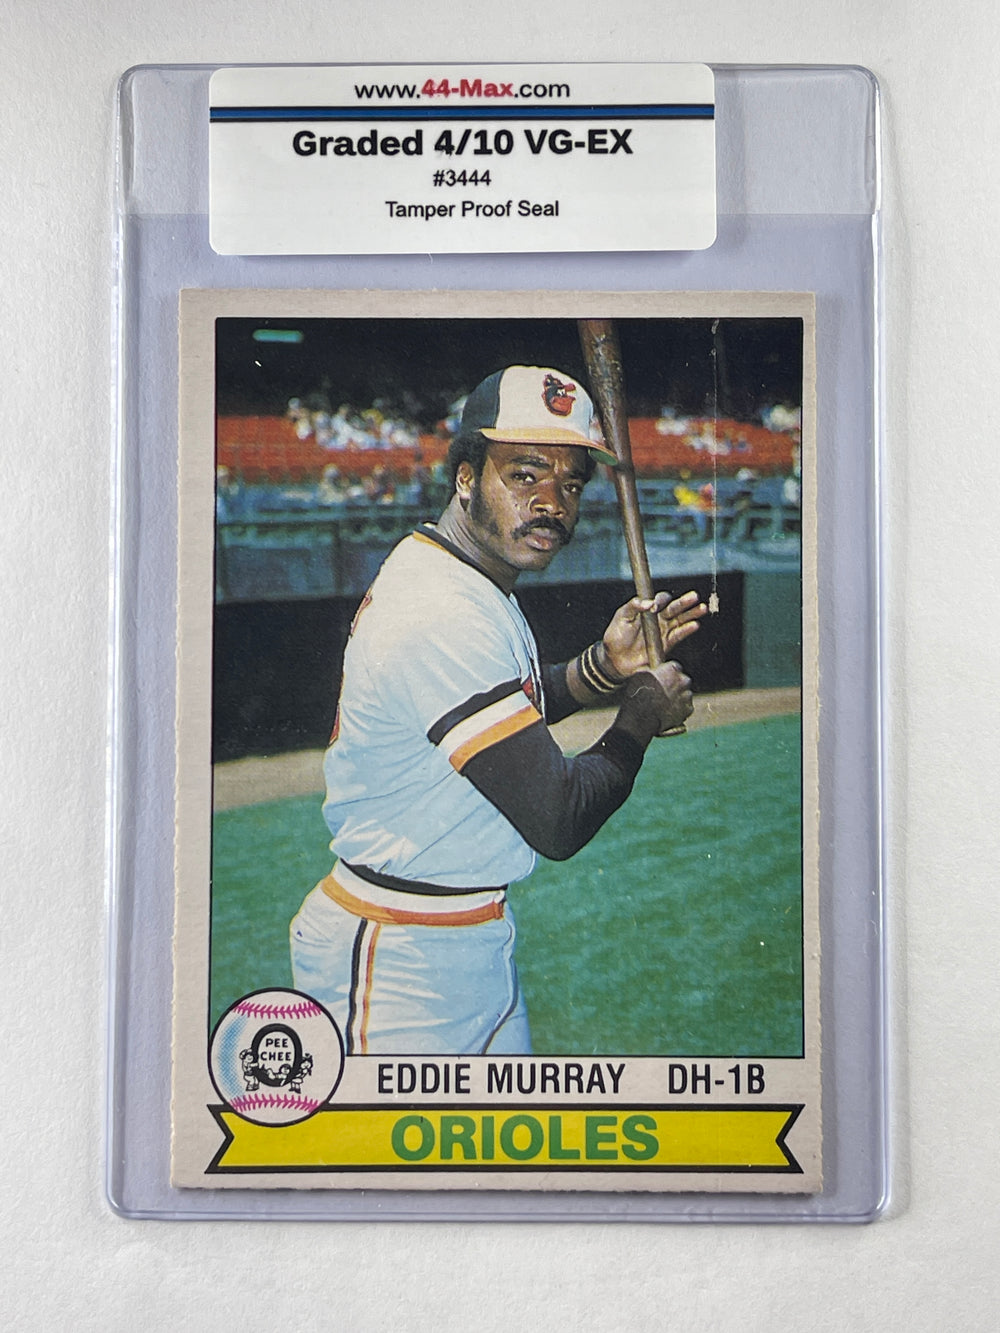 Eddie Murray 1979 O-Pee-Chee Baseball Card. 44-Max 4/10 VG-EX #3444